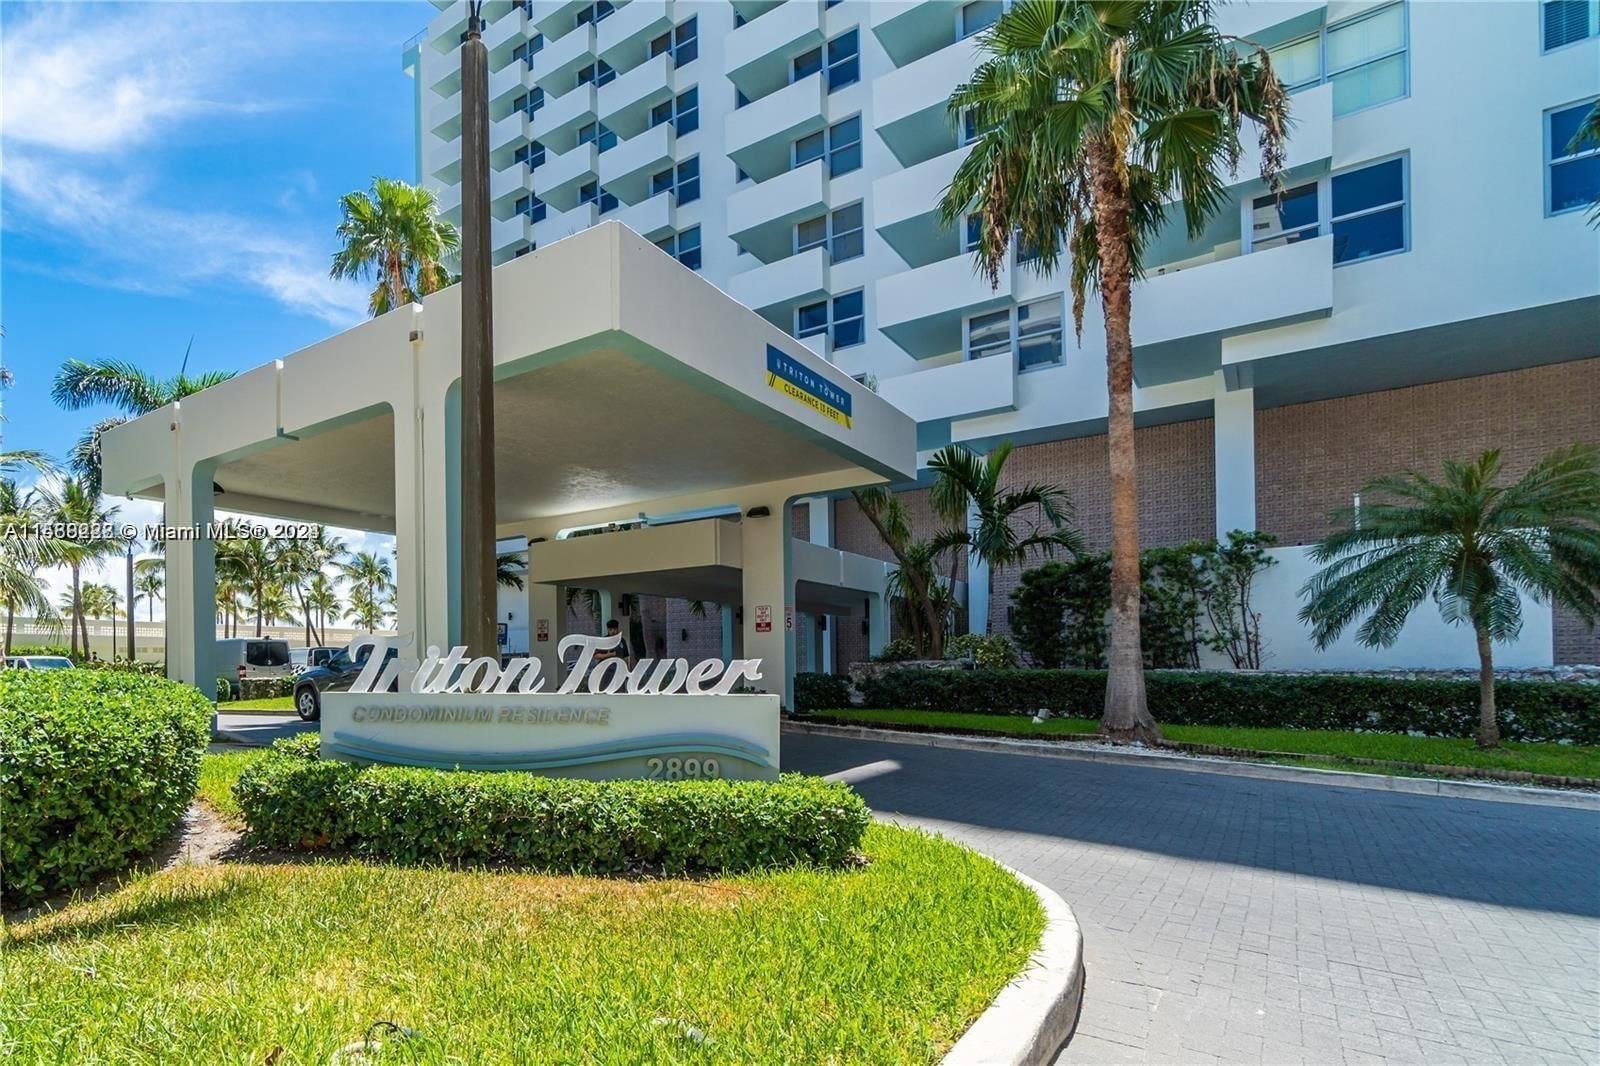 Real estate property located at 2899 Collins Ave #616, Miami-Dade County, TRITON TOWER CONDO, Miami Beach, FL